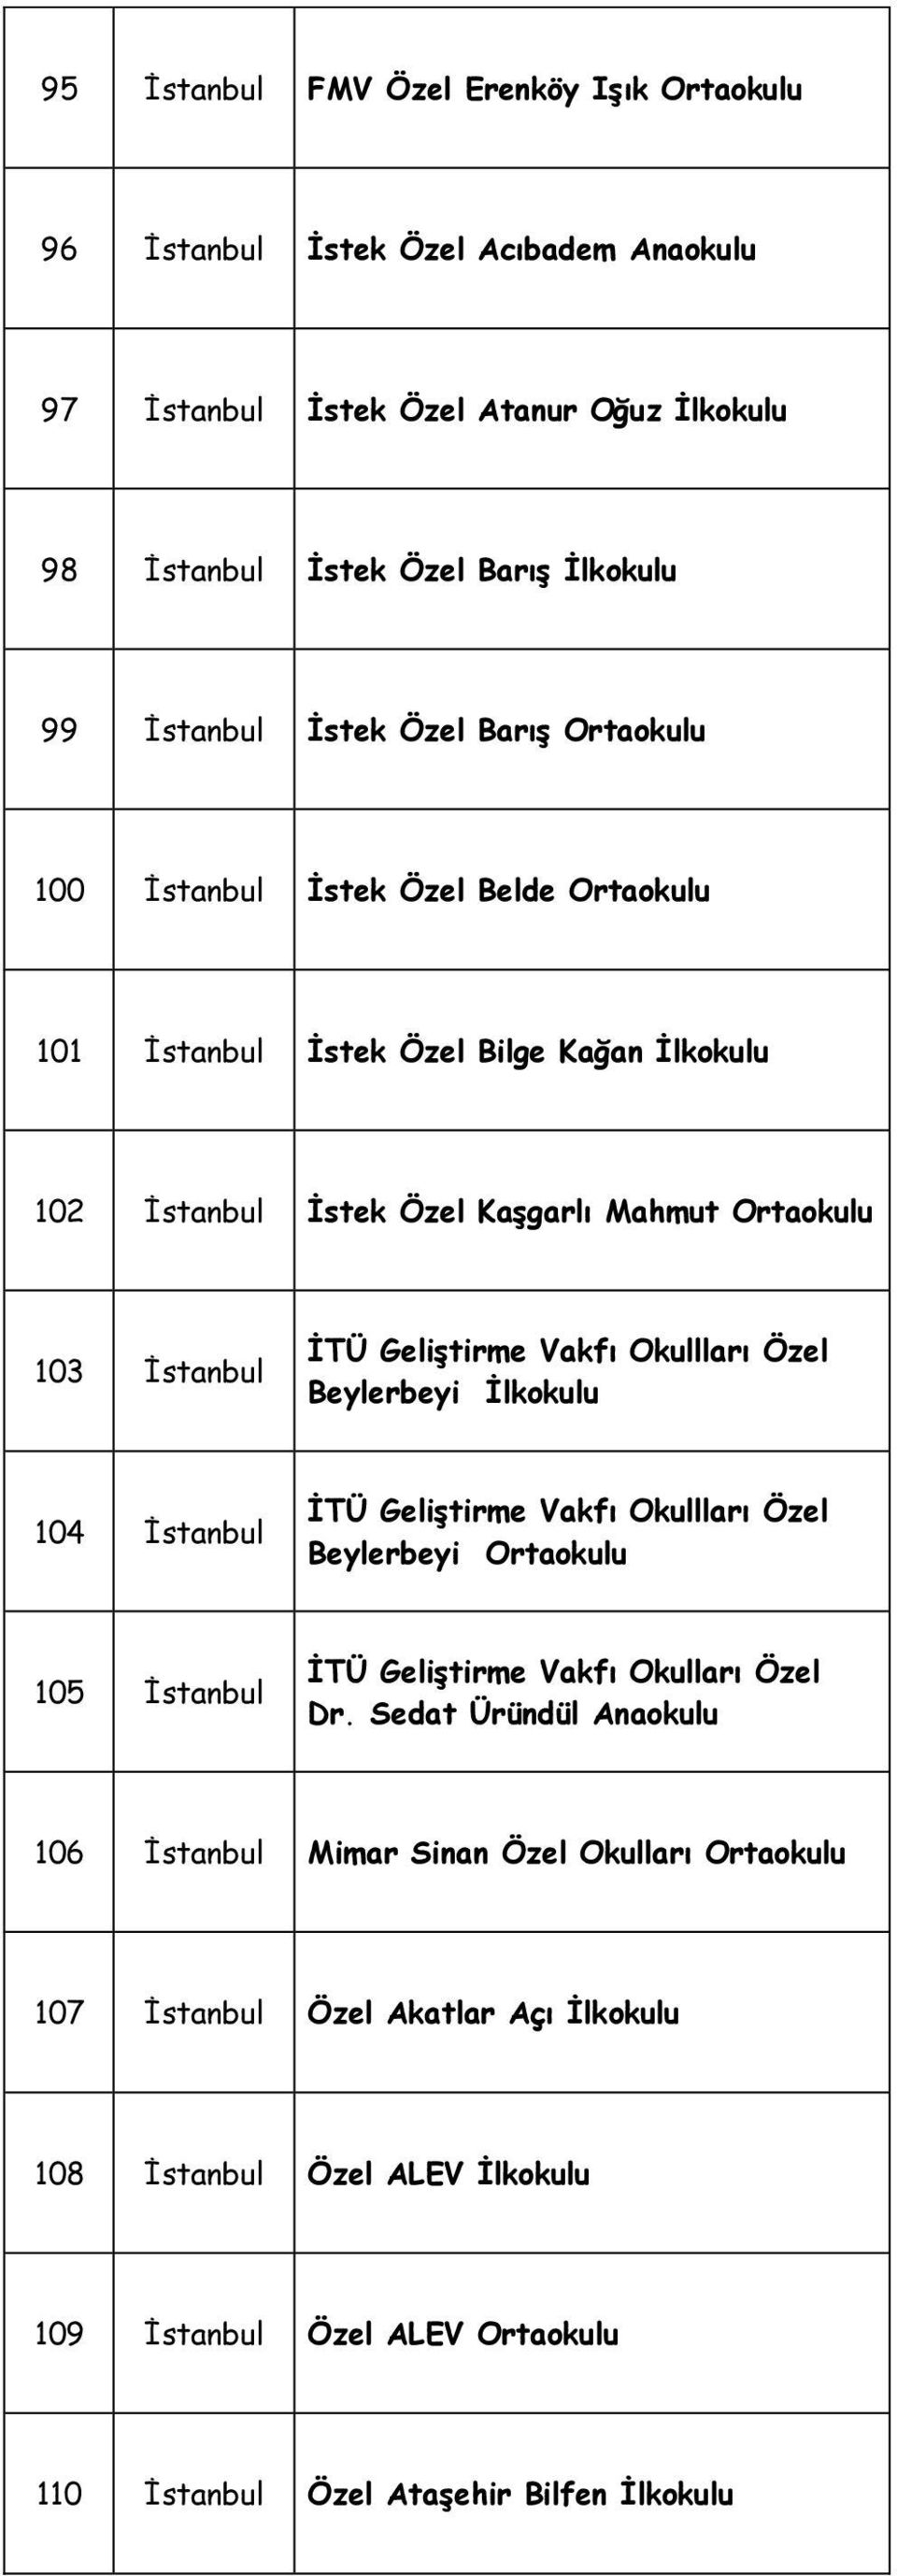 Okullları Özel Beylerbeyi İlkokulu 104 İstanbul İTÜ Geliştirme Vakfı Okullları Özel Beylerbeyi 105 İstanbul İTÜ Geliştirme Vakfı Okulları Özel Dr.